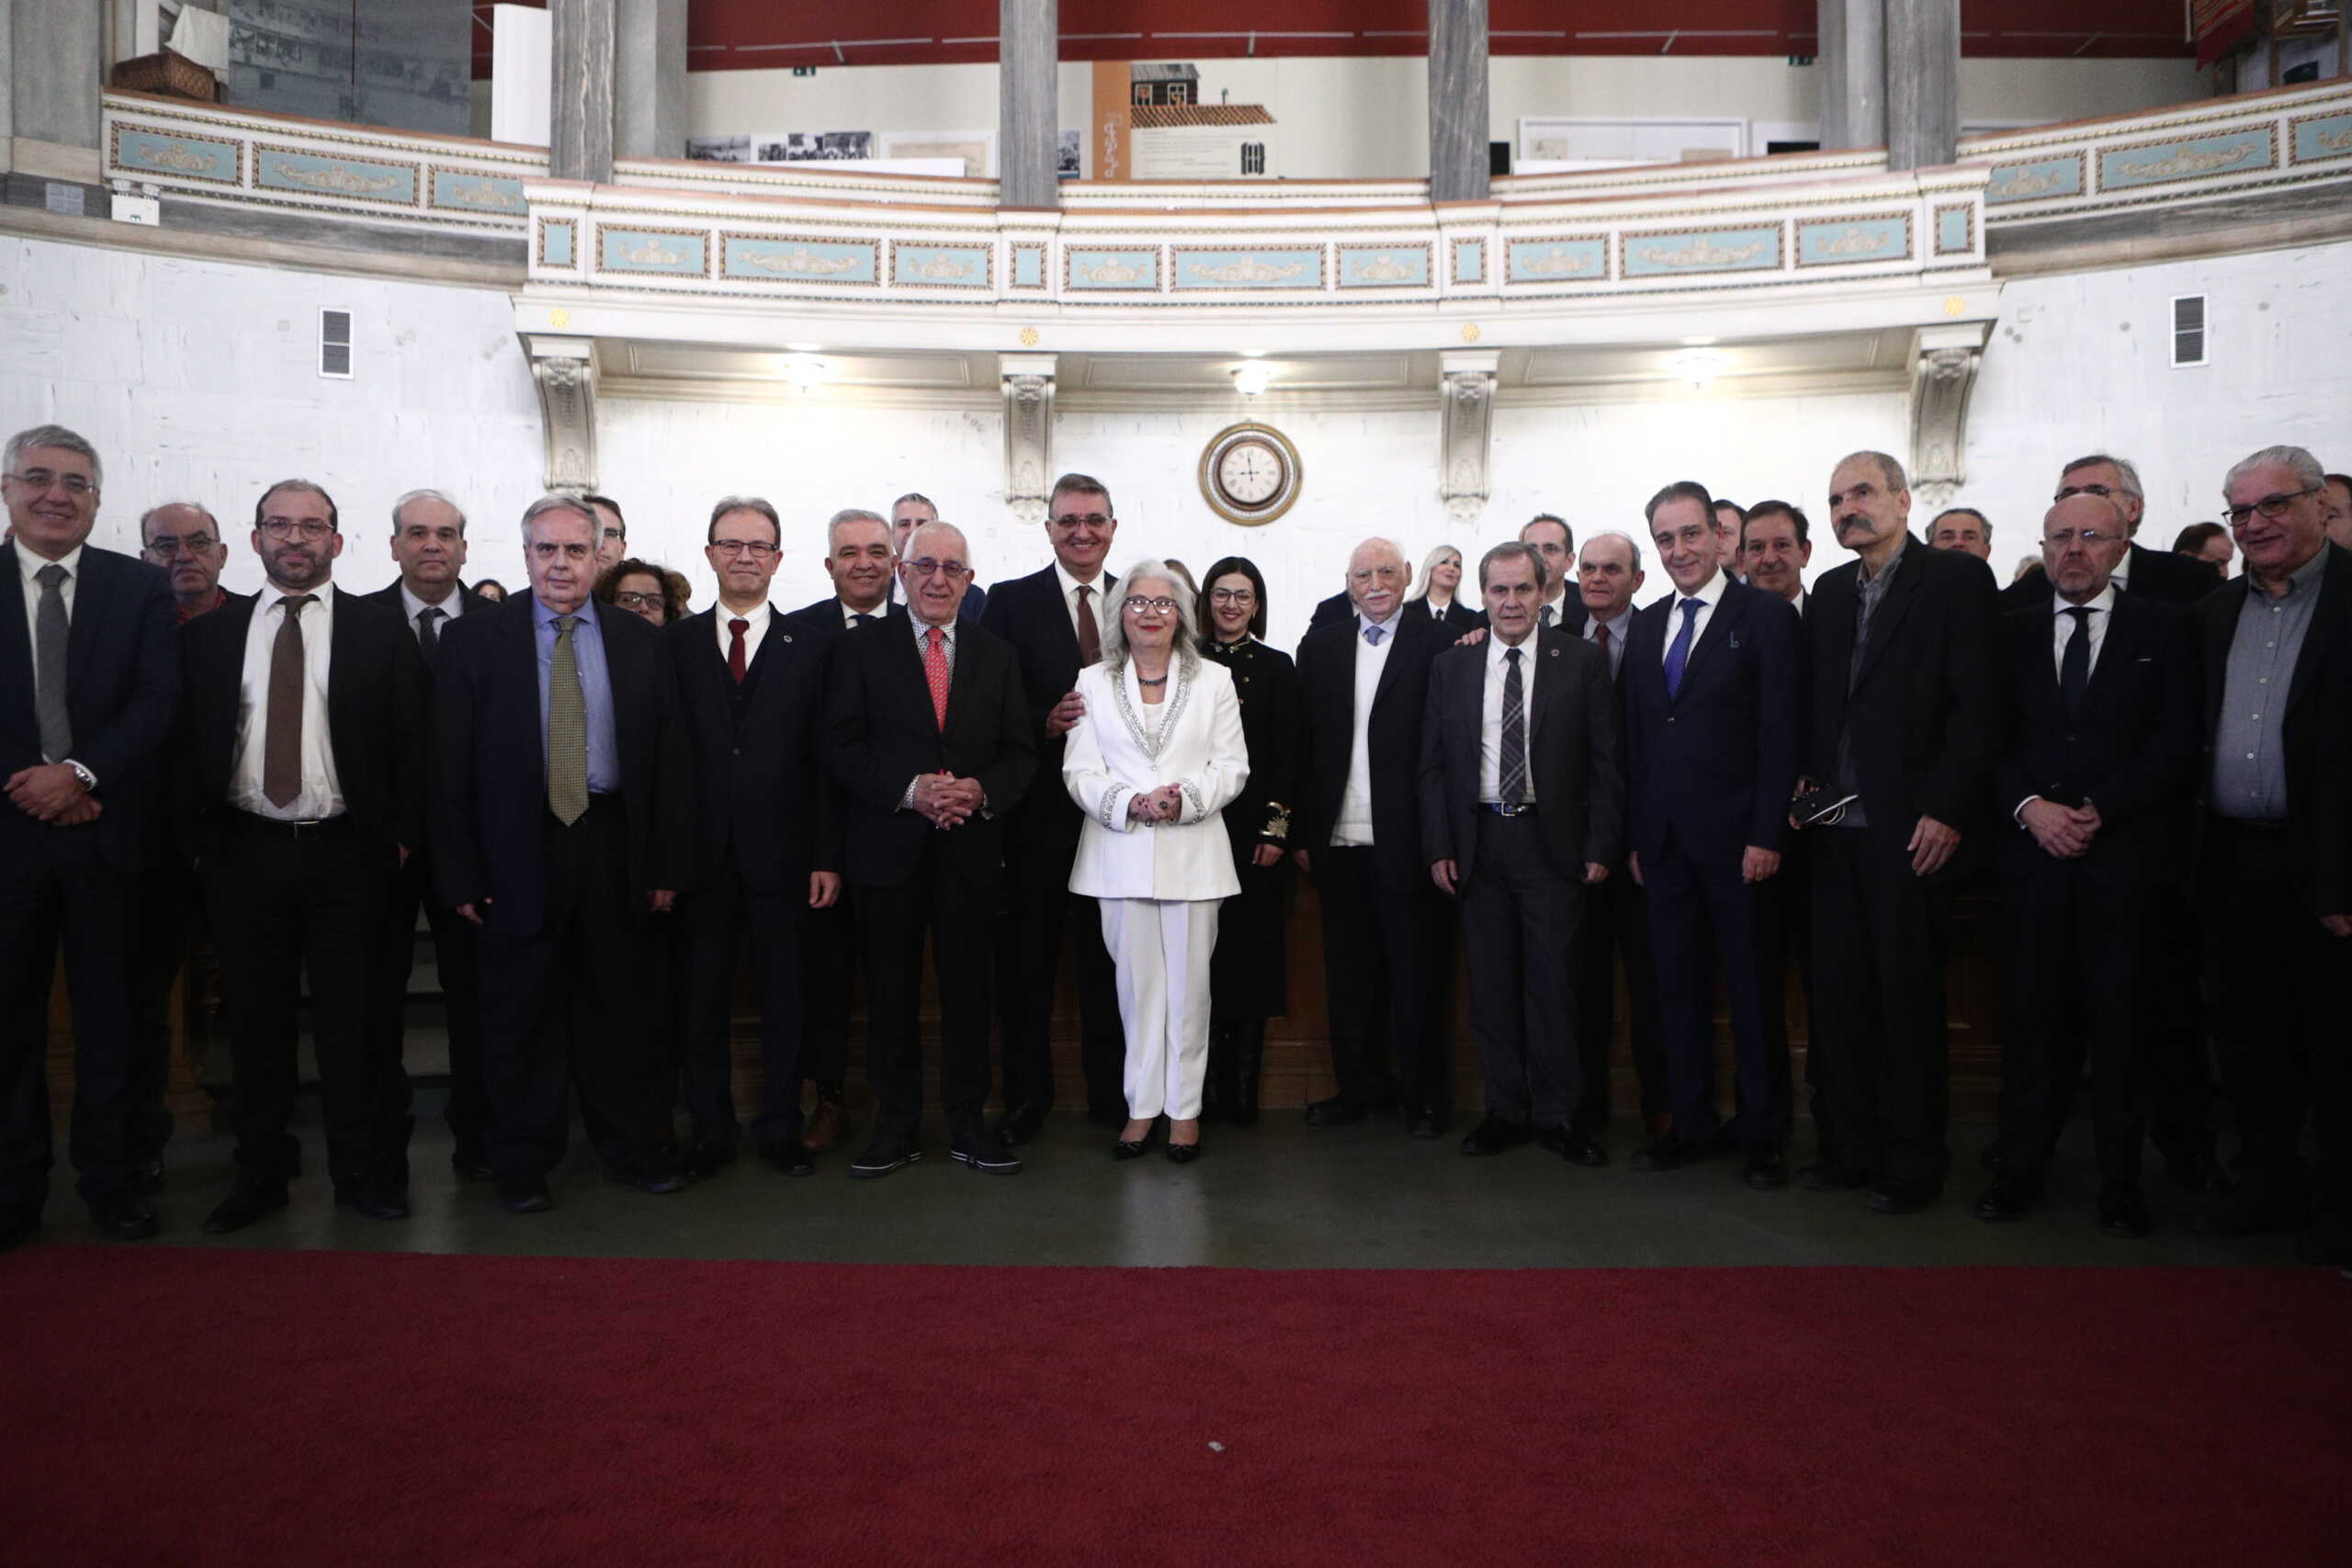 Ο Πανελλήνιος Ιατρικός Σύλλογος τίμησε τους τέως προέδρους του σε εκδήλωση στην Παλαιά Βουλή